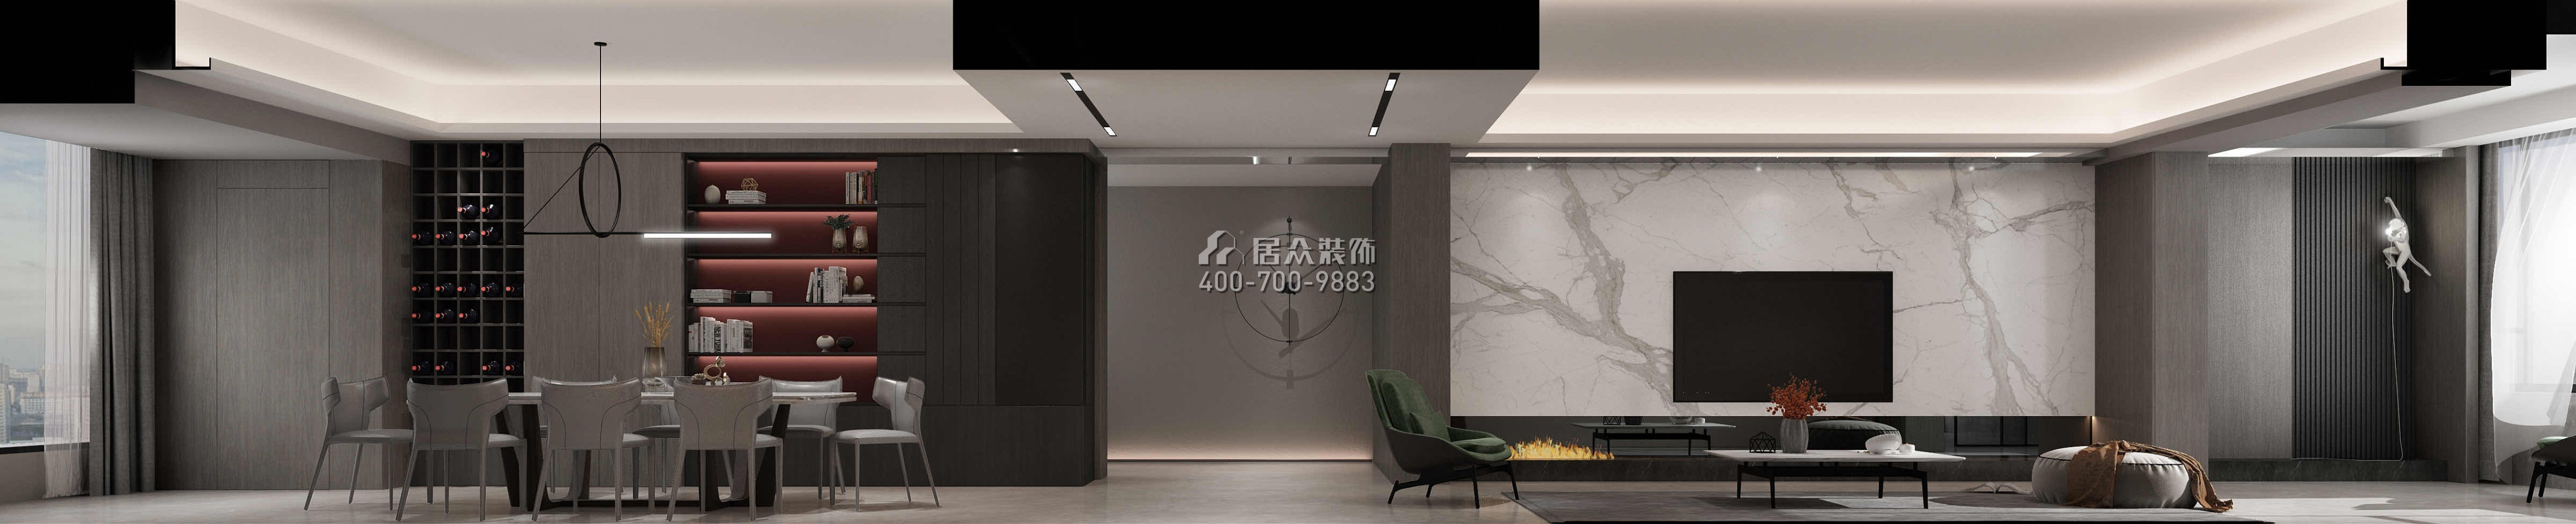 中建江山壹號300平方米現代簡約風格平層戶型客廳裝修效果圖